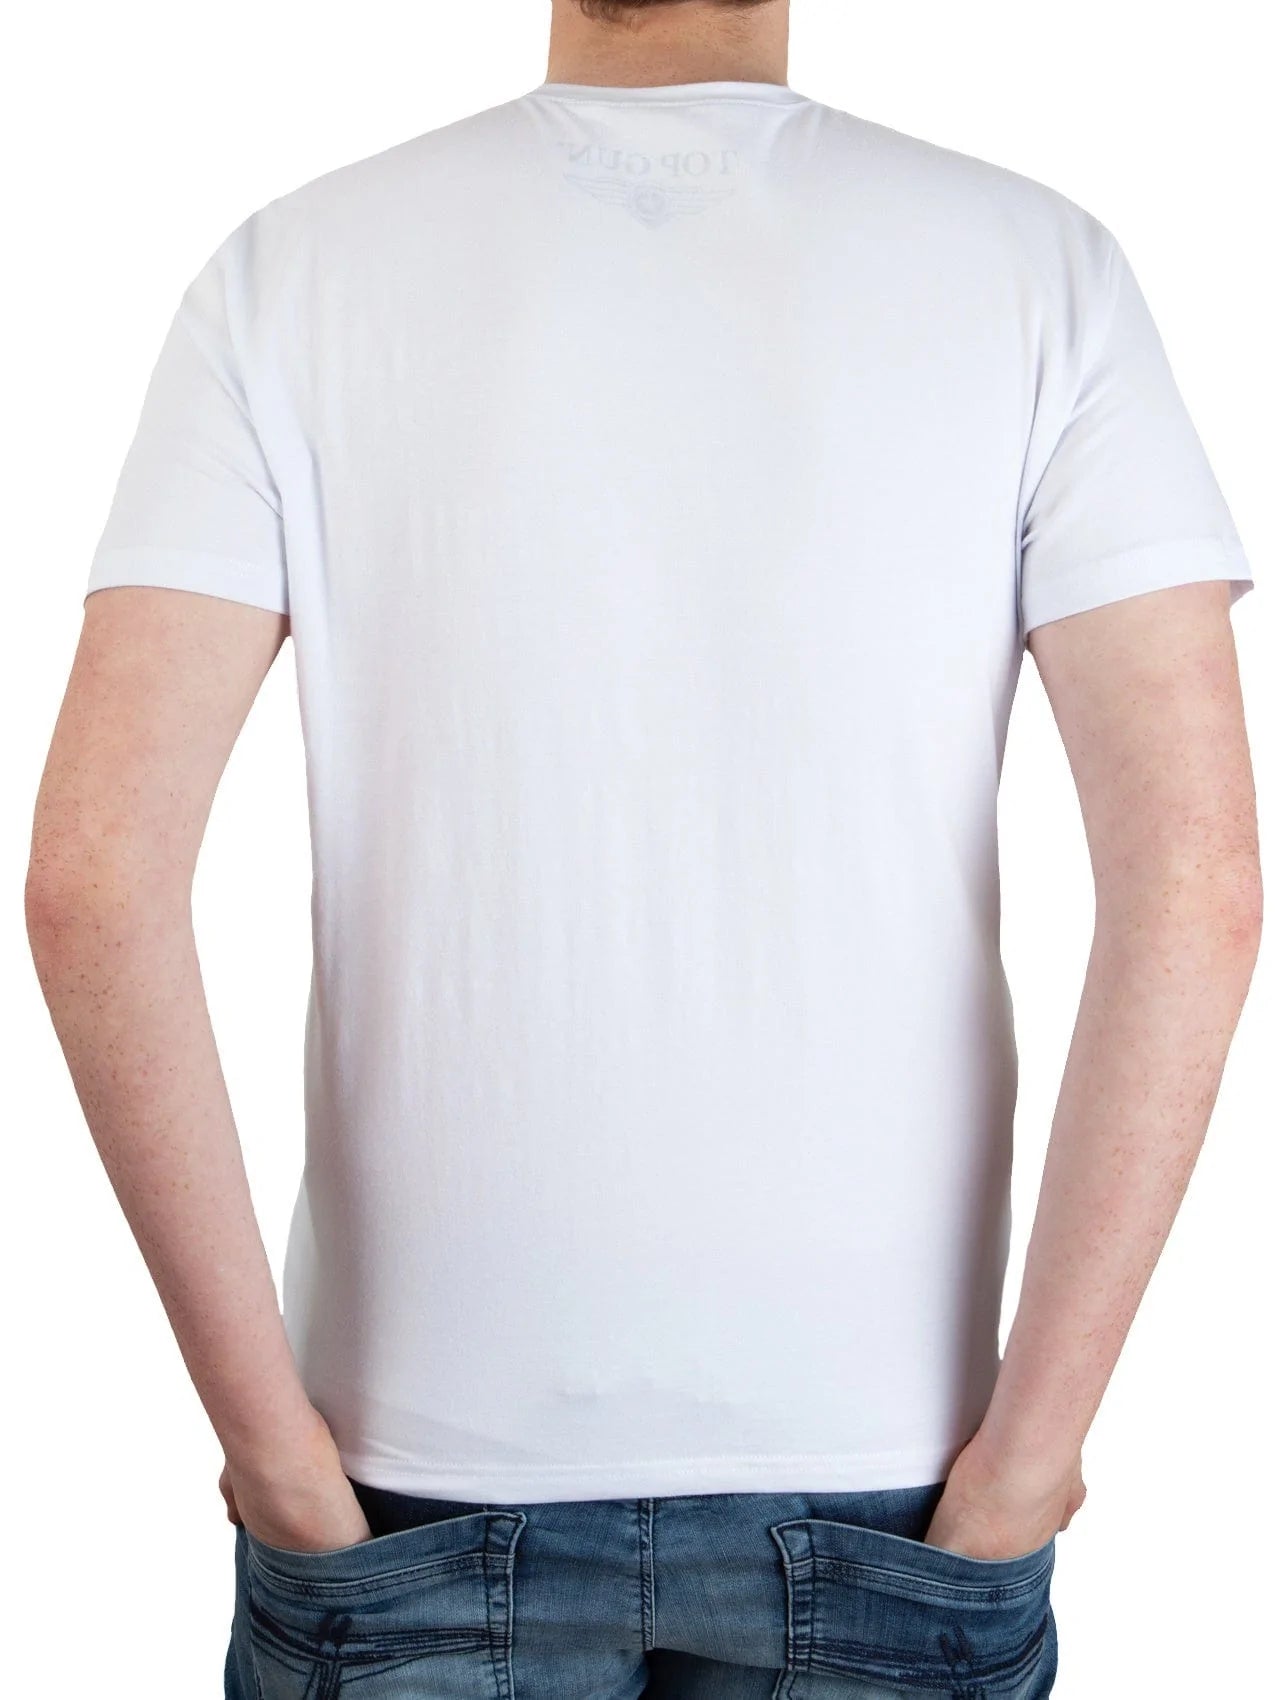 Top Gun"Cloudy" T-shirt, white